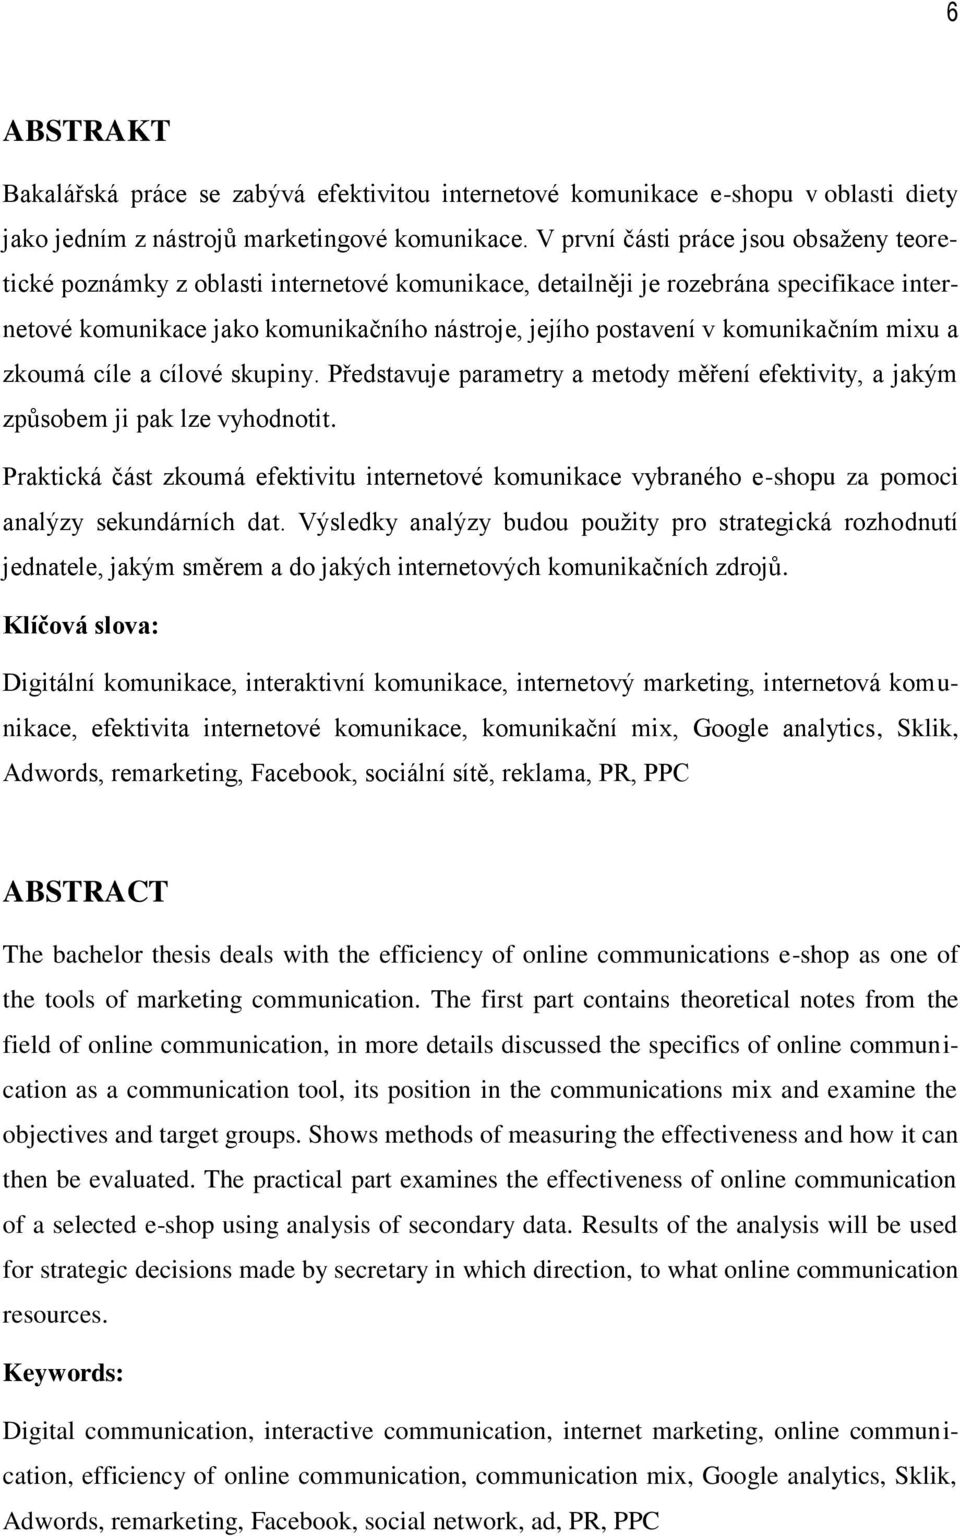 Efektivita digitální komunikace vybraného e-shopu. Monika Dvořáková - PDF  Free Download